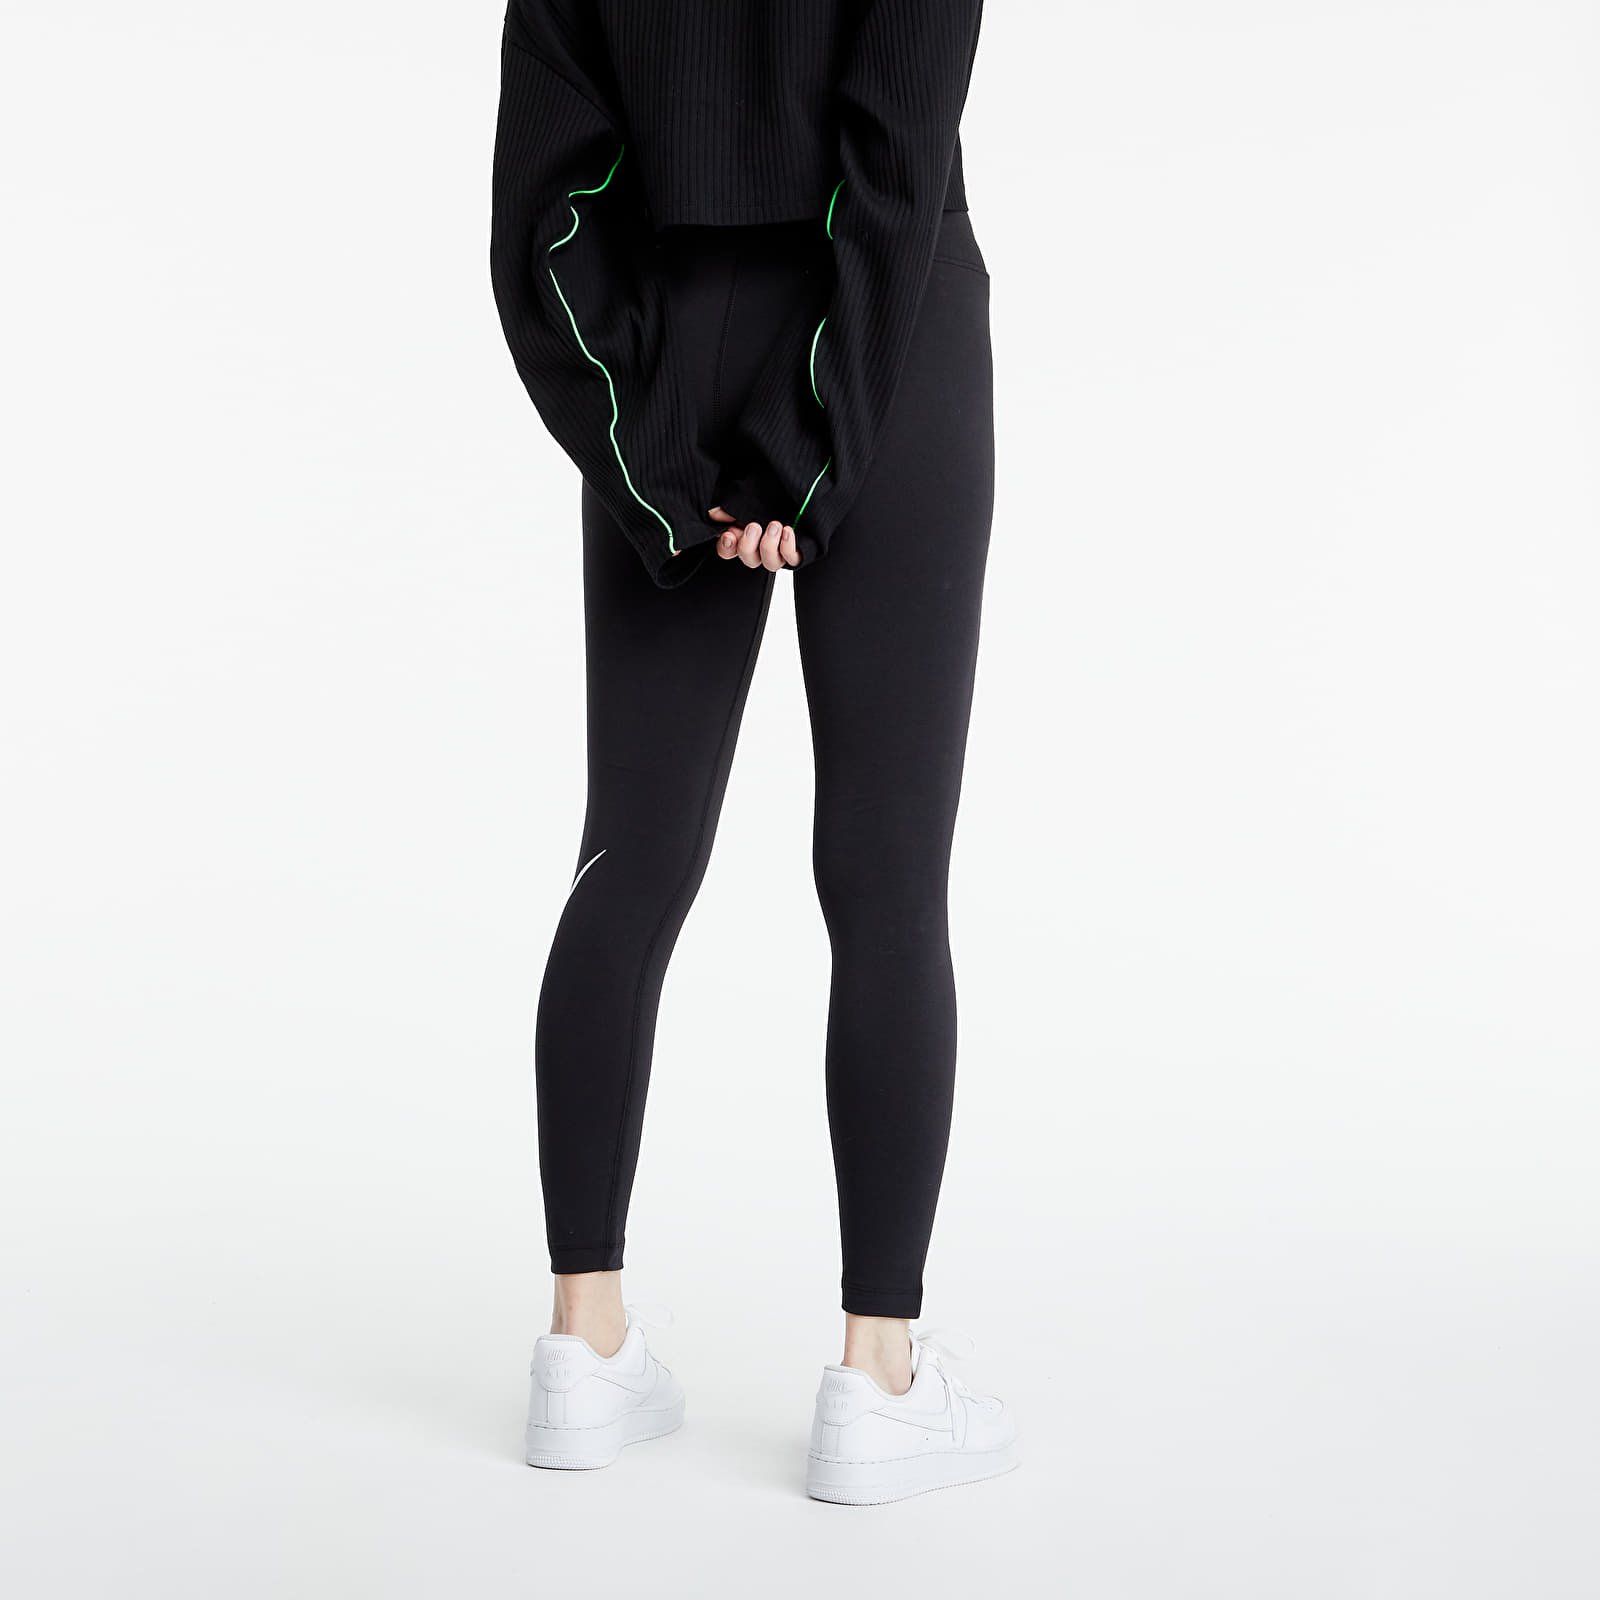 Nike Women Mid-Rise Swoosh Leggings Black cz8530-010 Size M 37